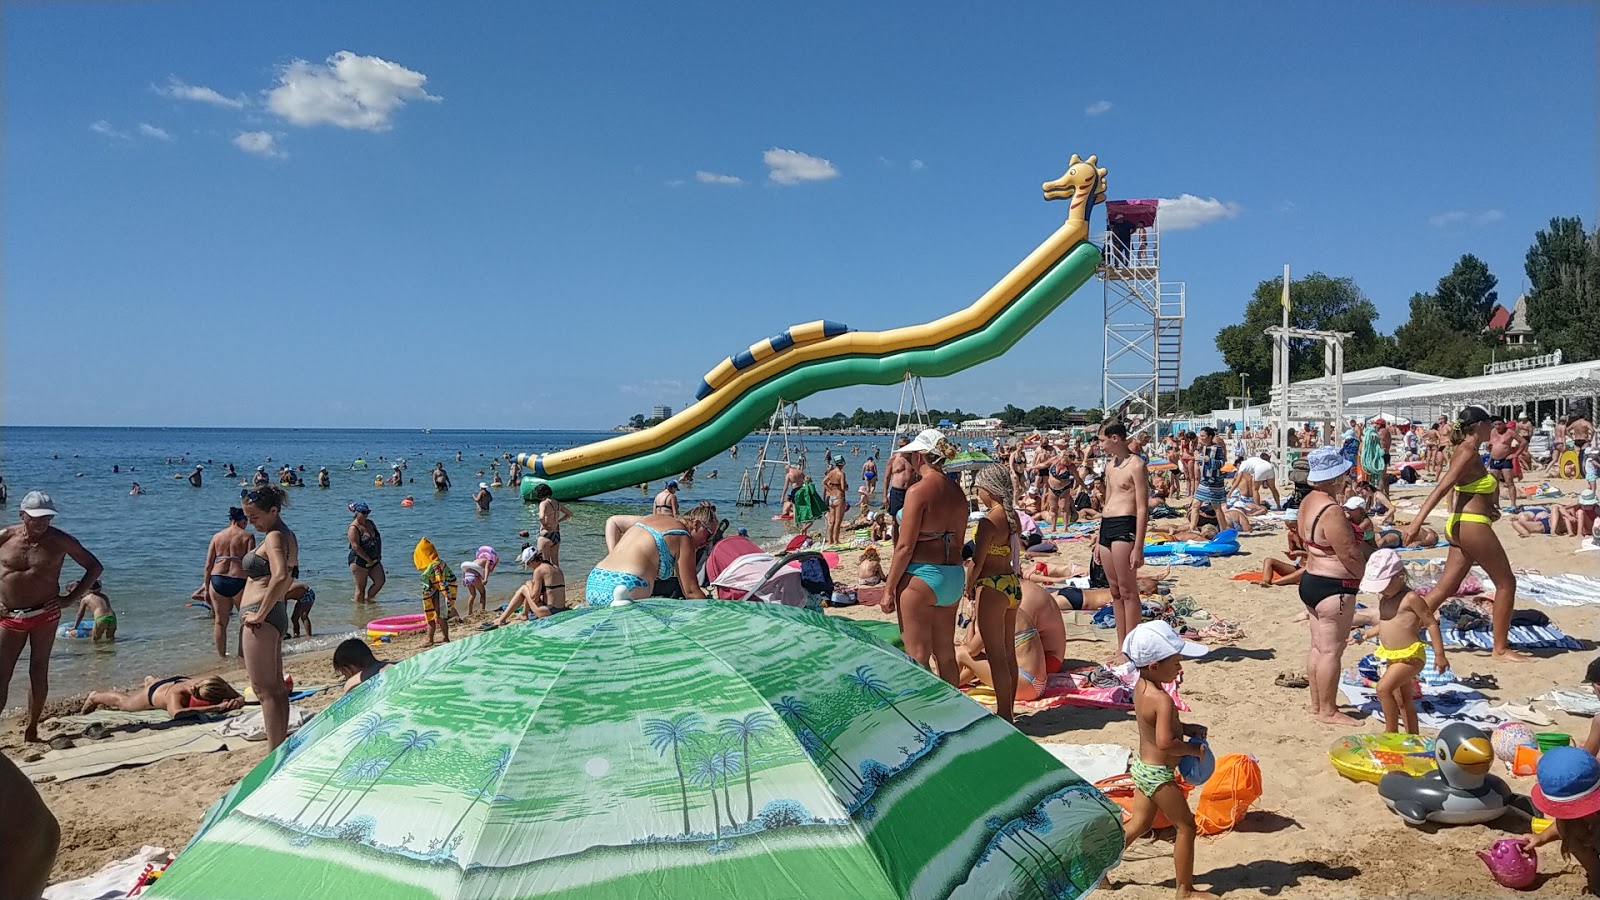 Oren-Crimea beach'in fotoğrafı - rahatlamayı sevenler arasında popüler bir yer